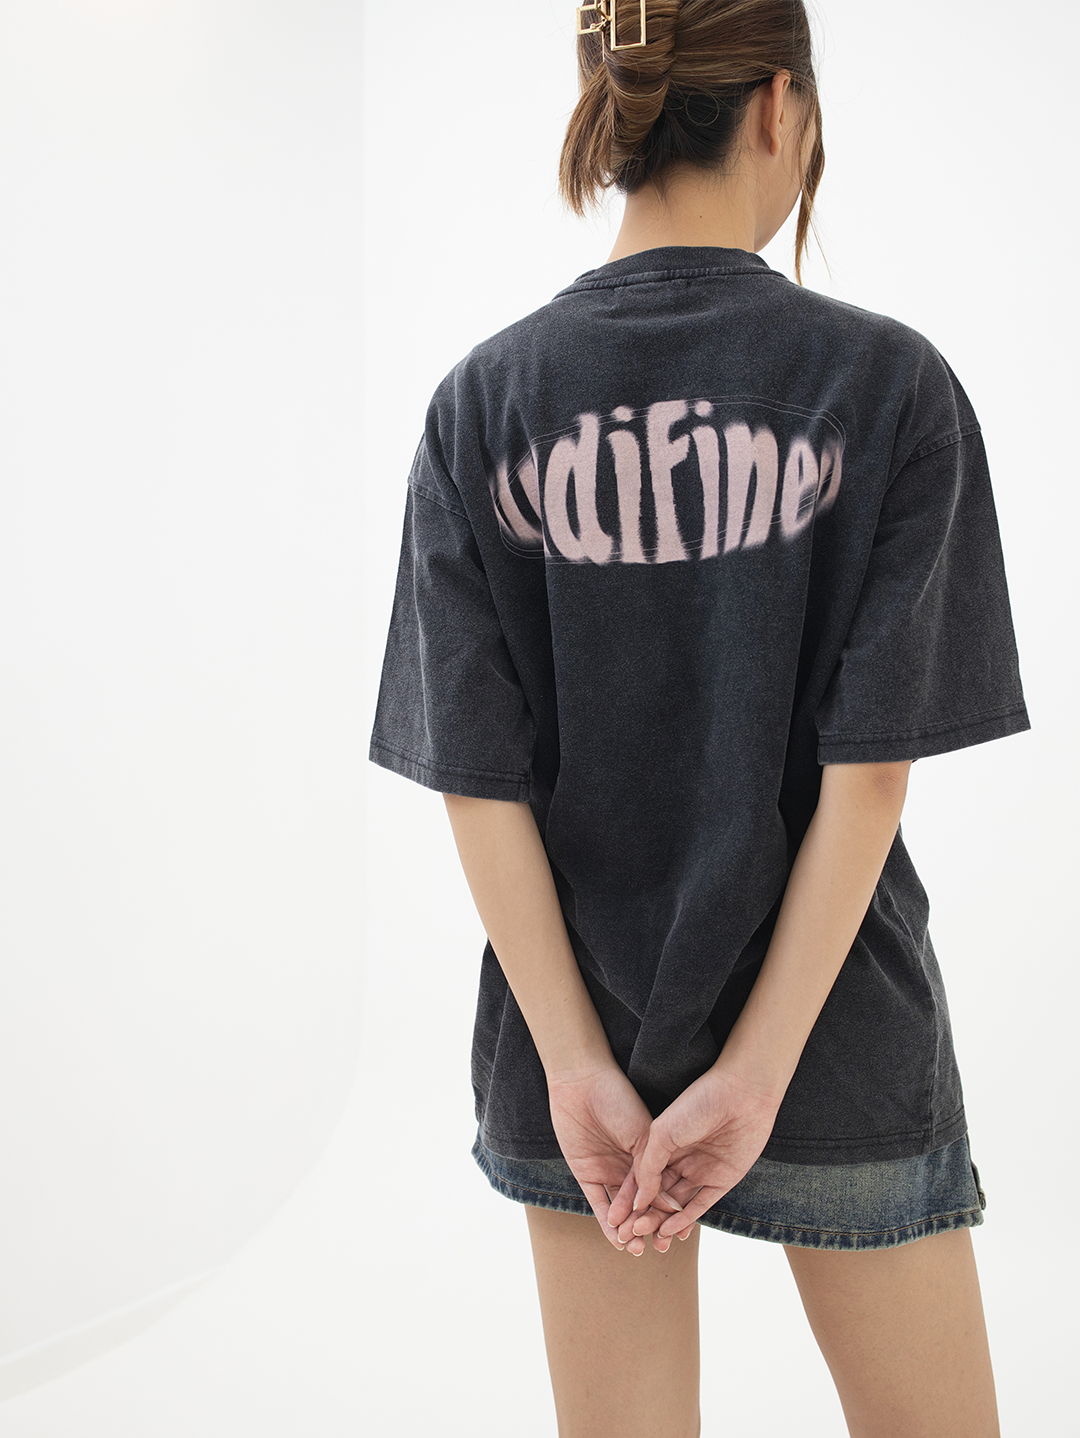 ASUNI Parfum Undifined Uni-Sex T-Shirt In Black